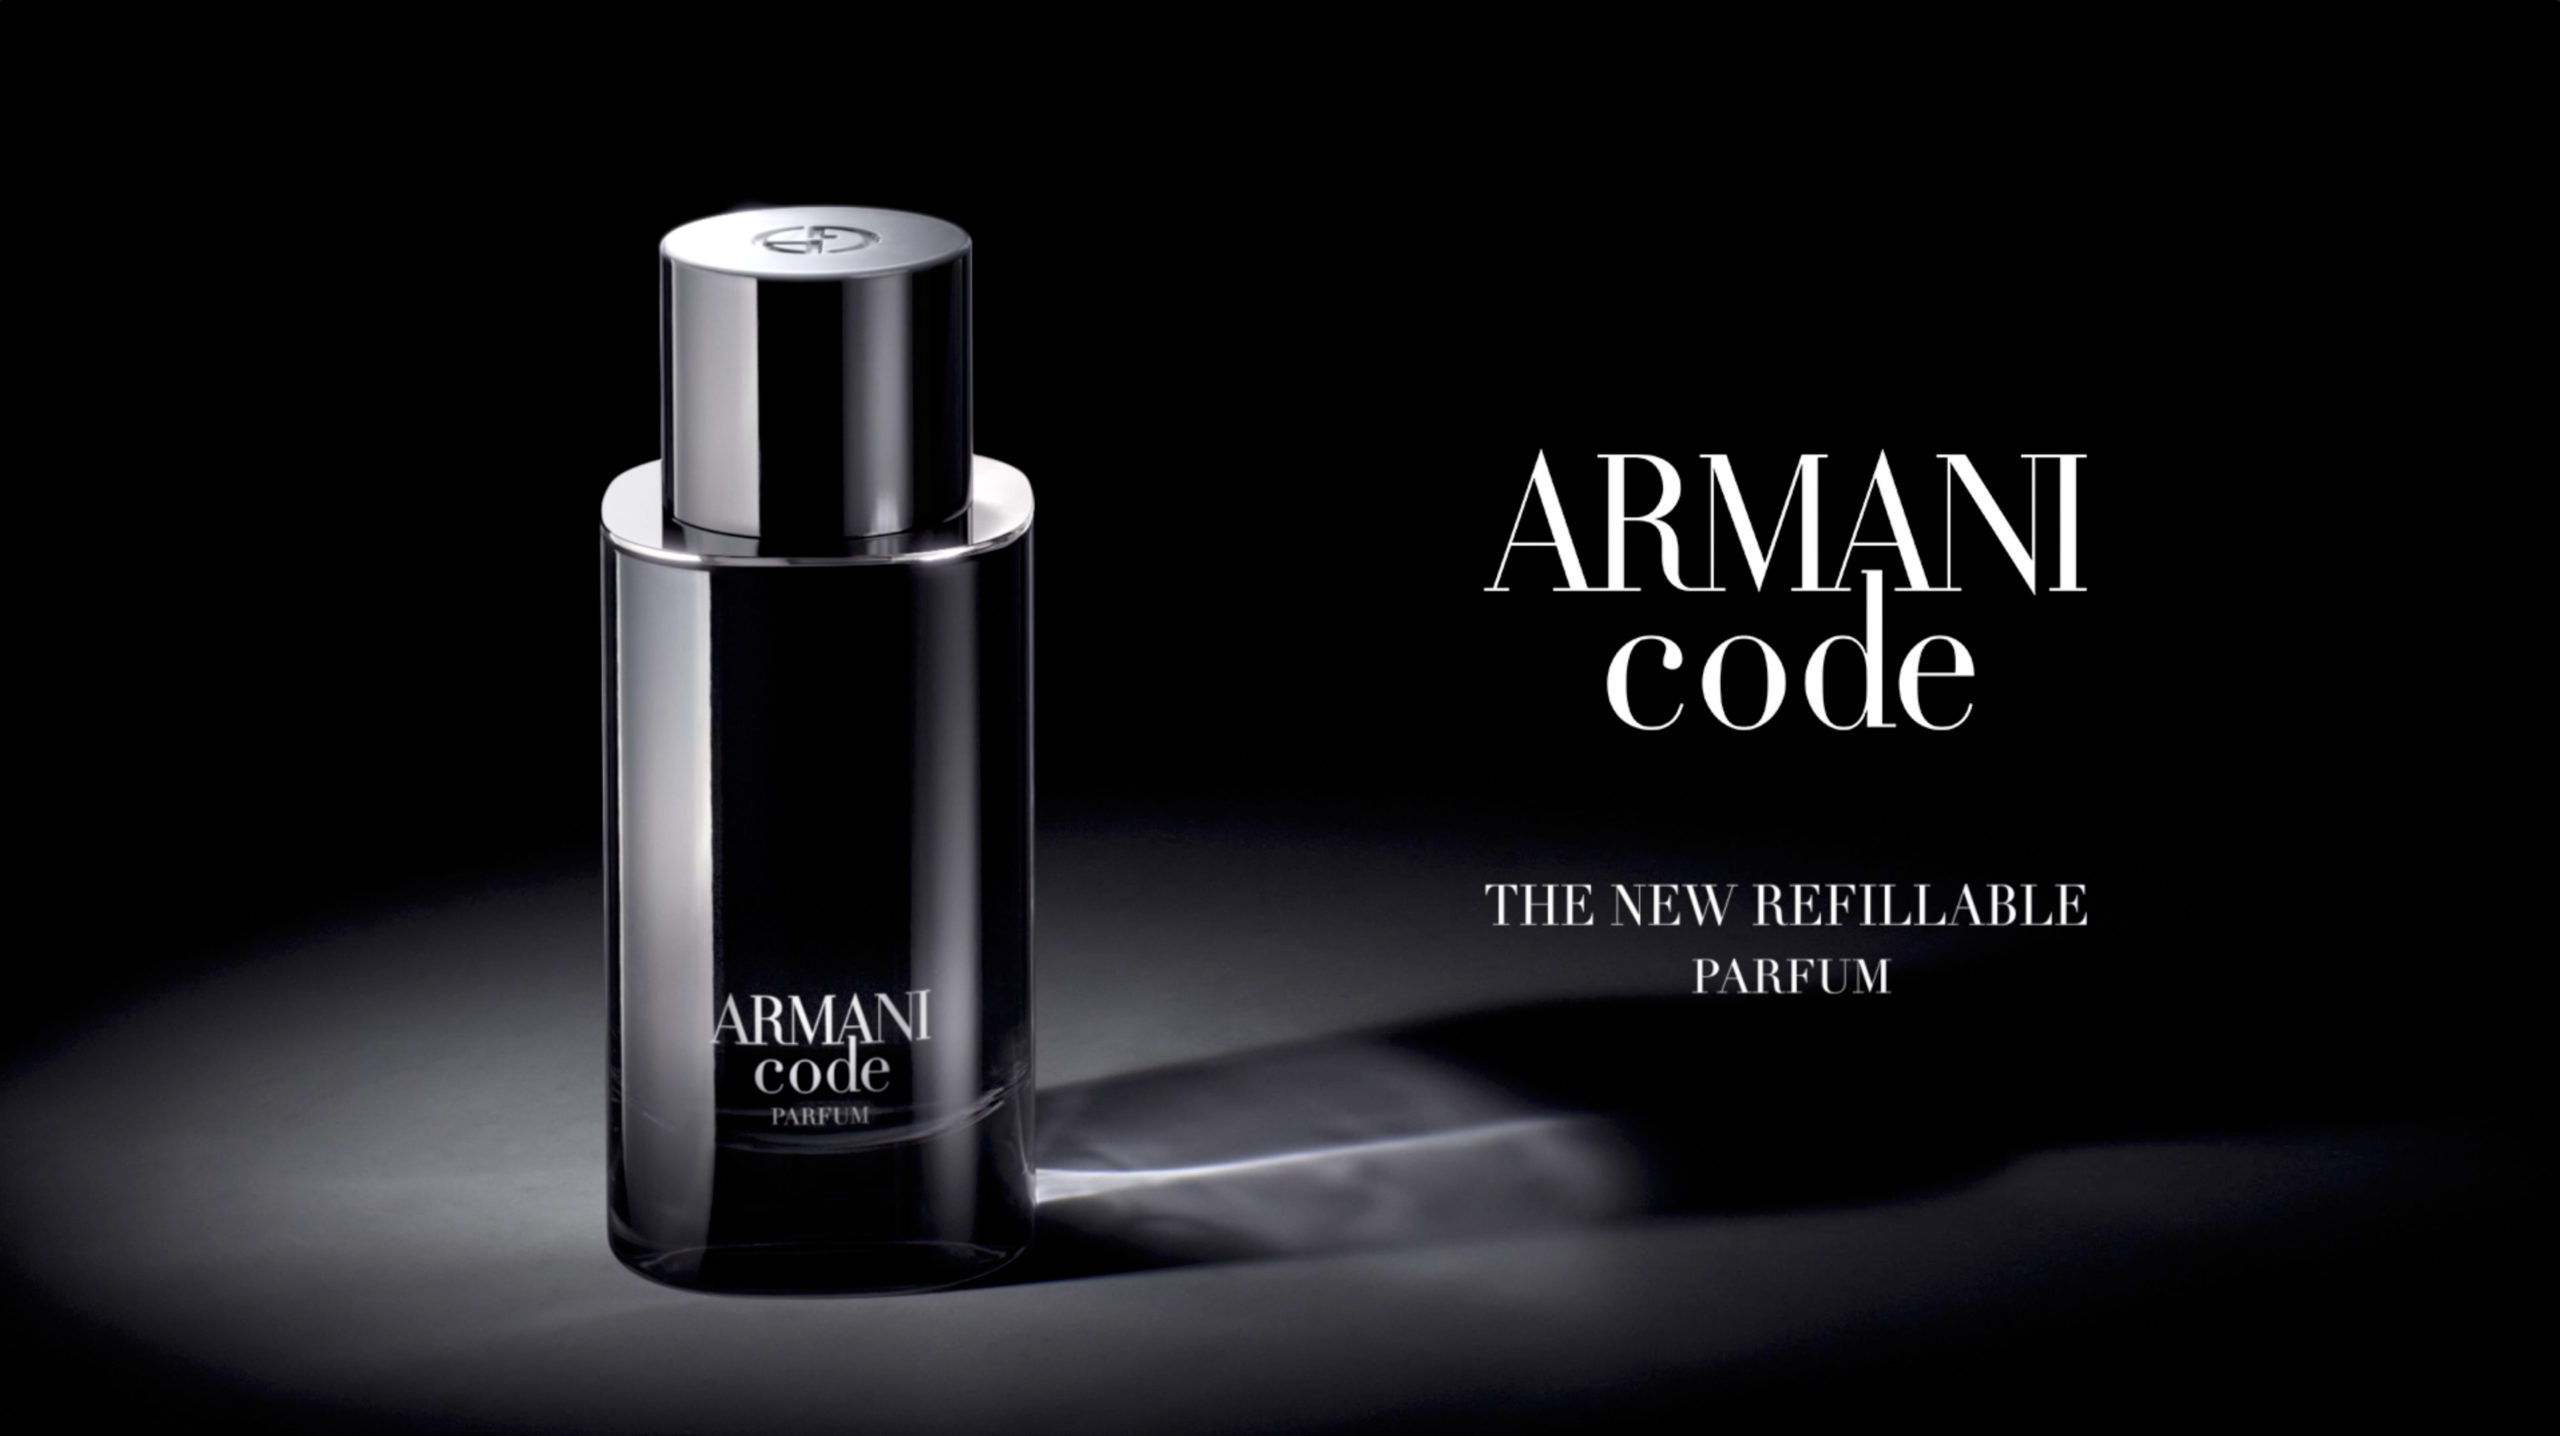 Armani Code cavillac studio Packshot Perfum